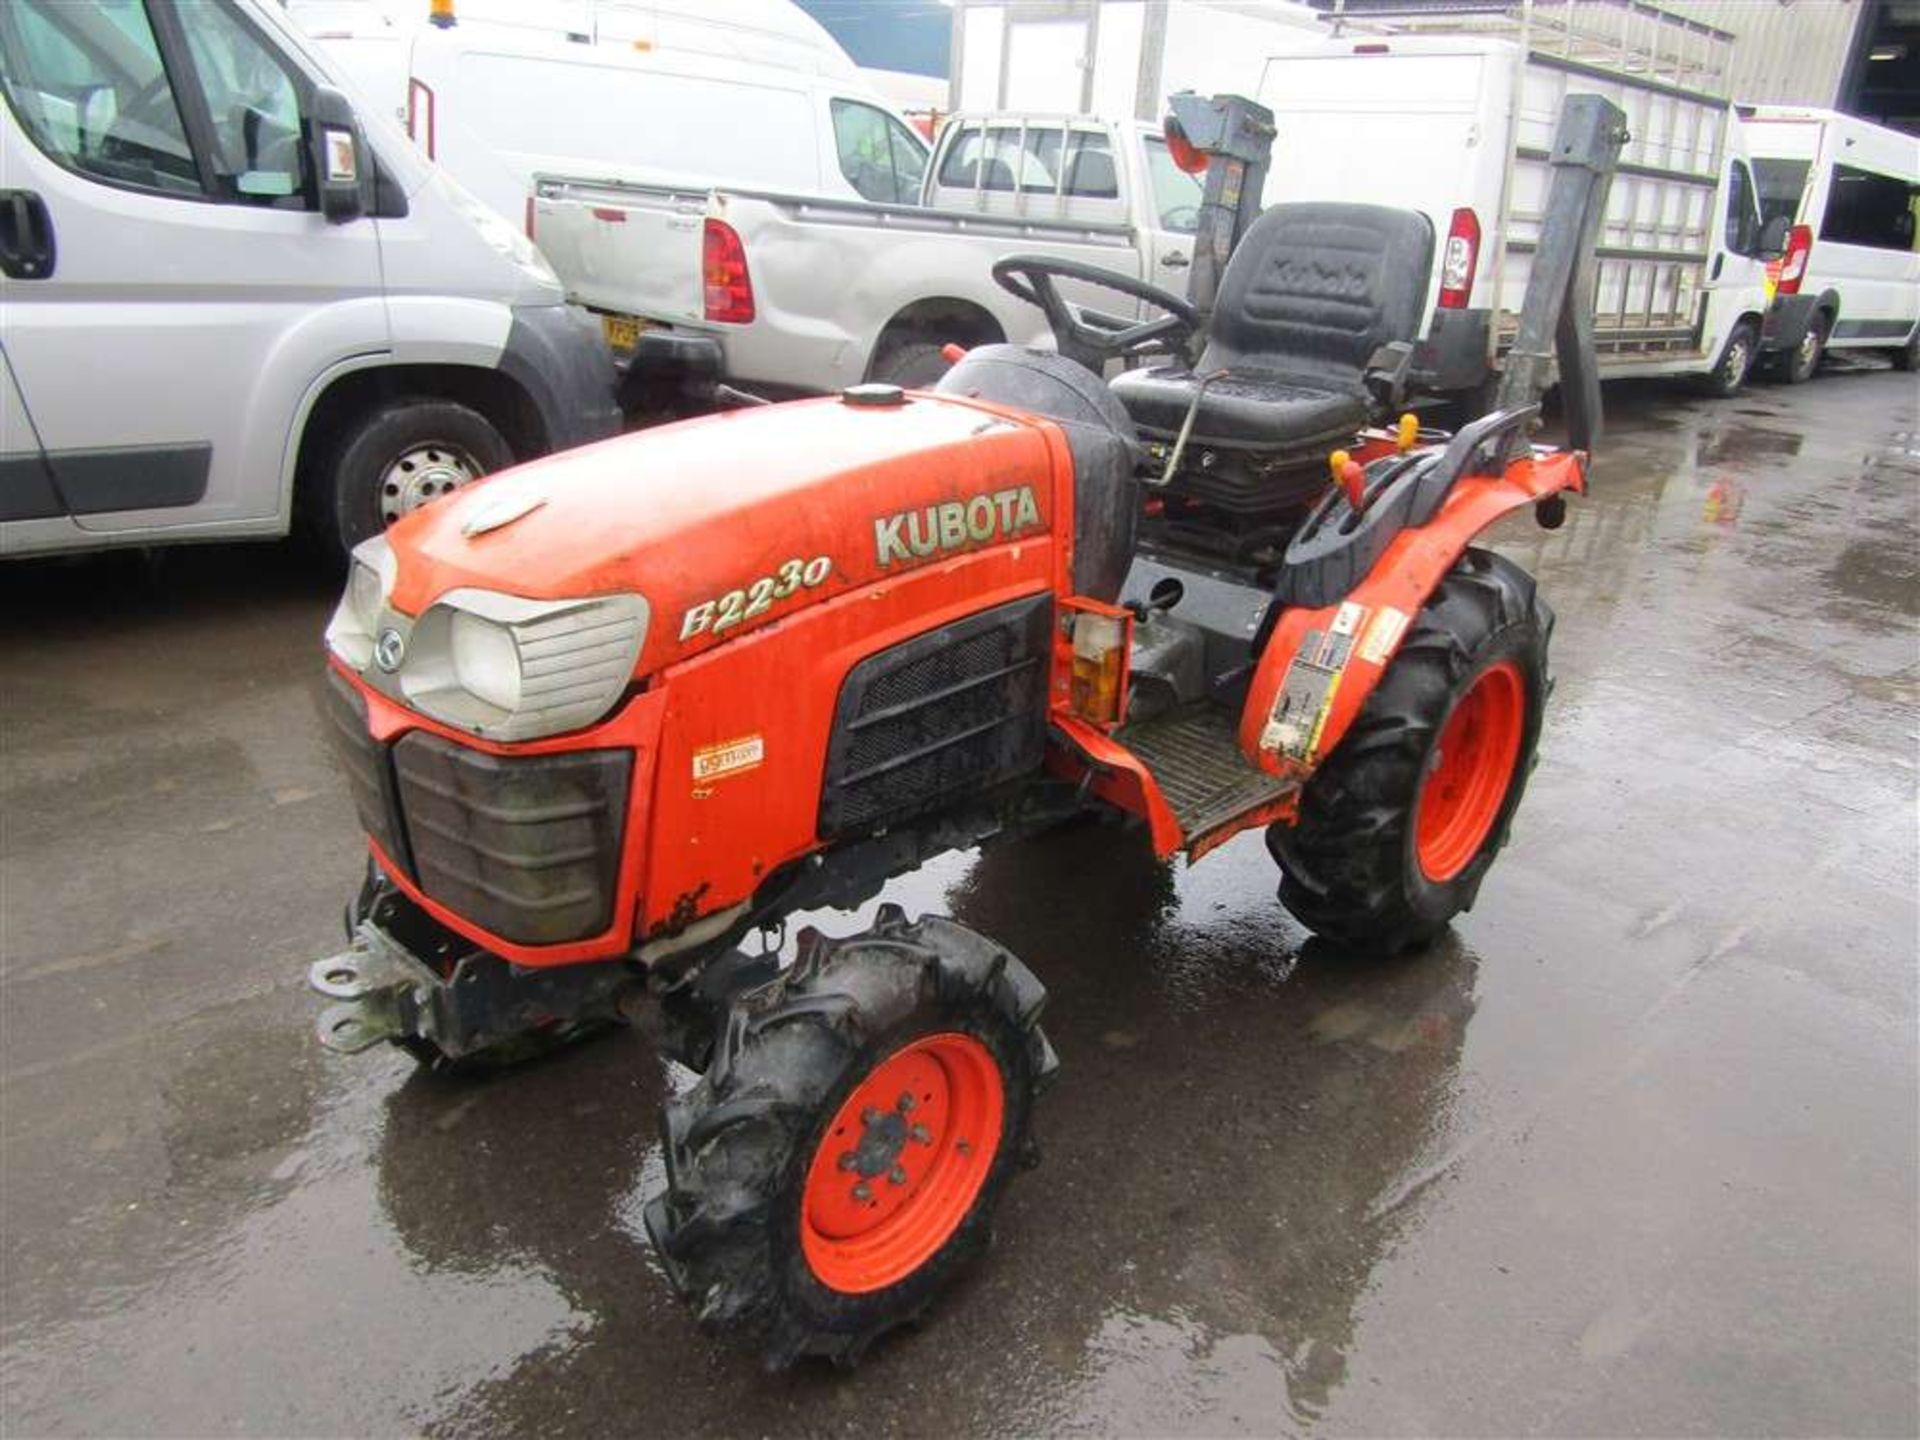 2009 09 reg Kubota B2230 Tractor - Image 2 of 4